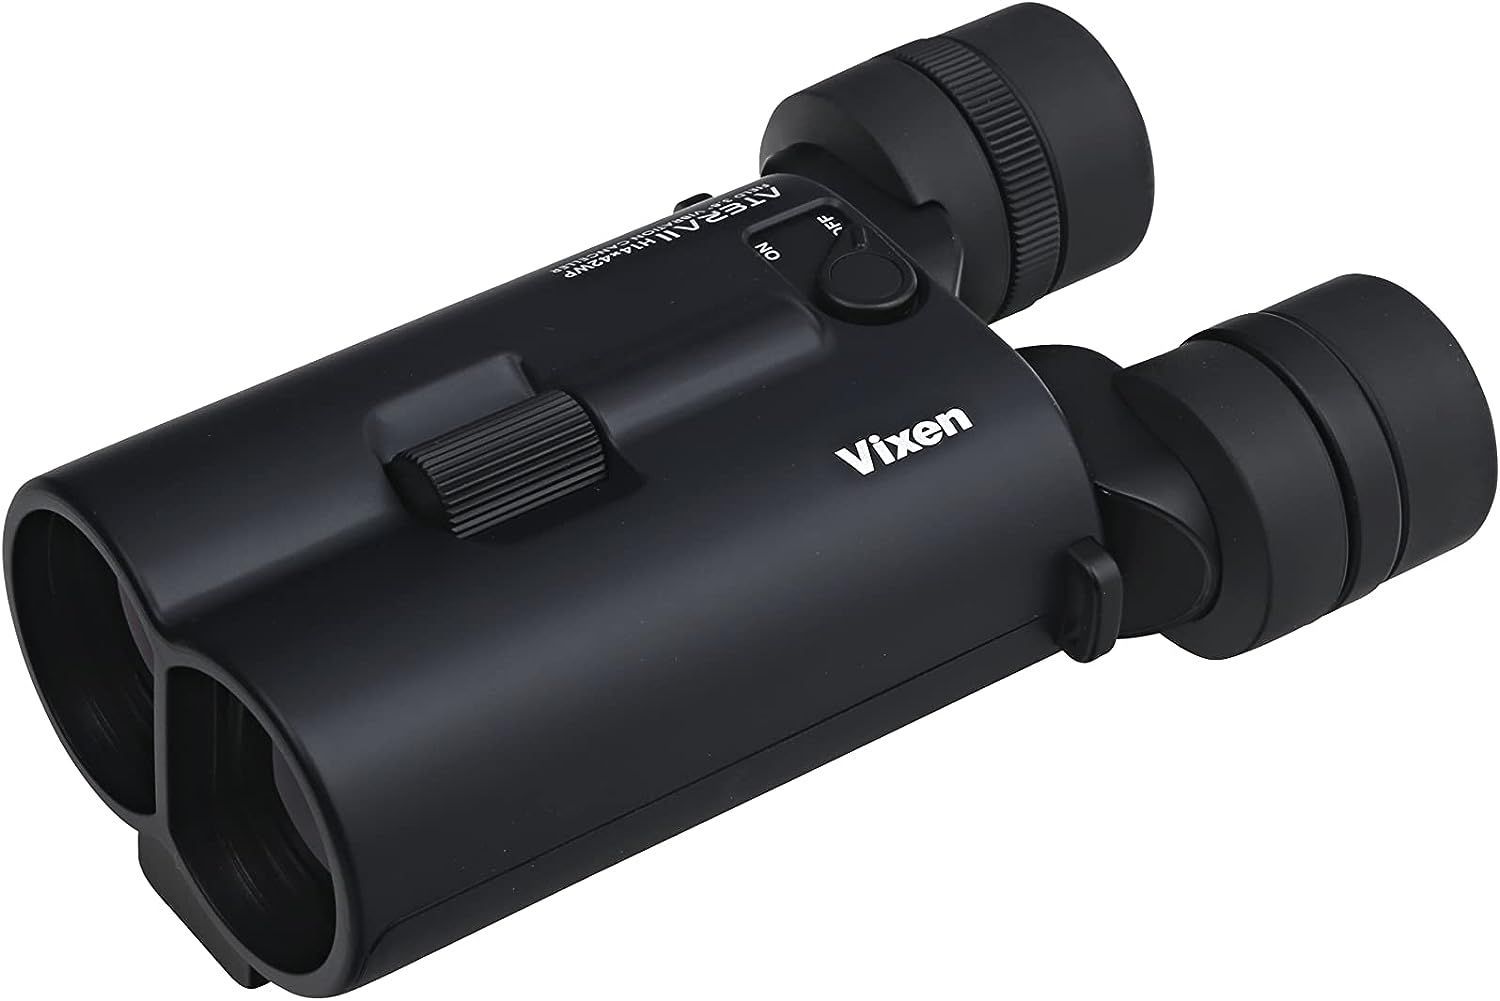 ビクセン(Vixen) 防振 双眼鏡 アテラ ATERA II H14x42WP(ブラック) 11513 トクイショップ メルカリ